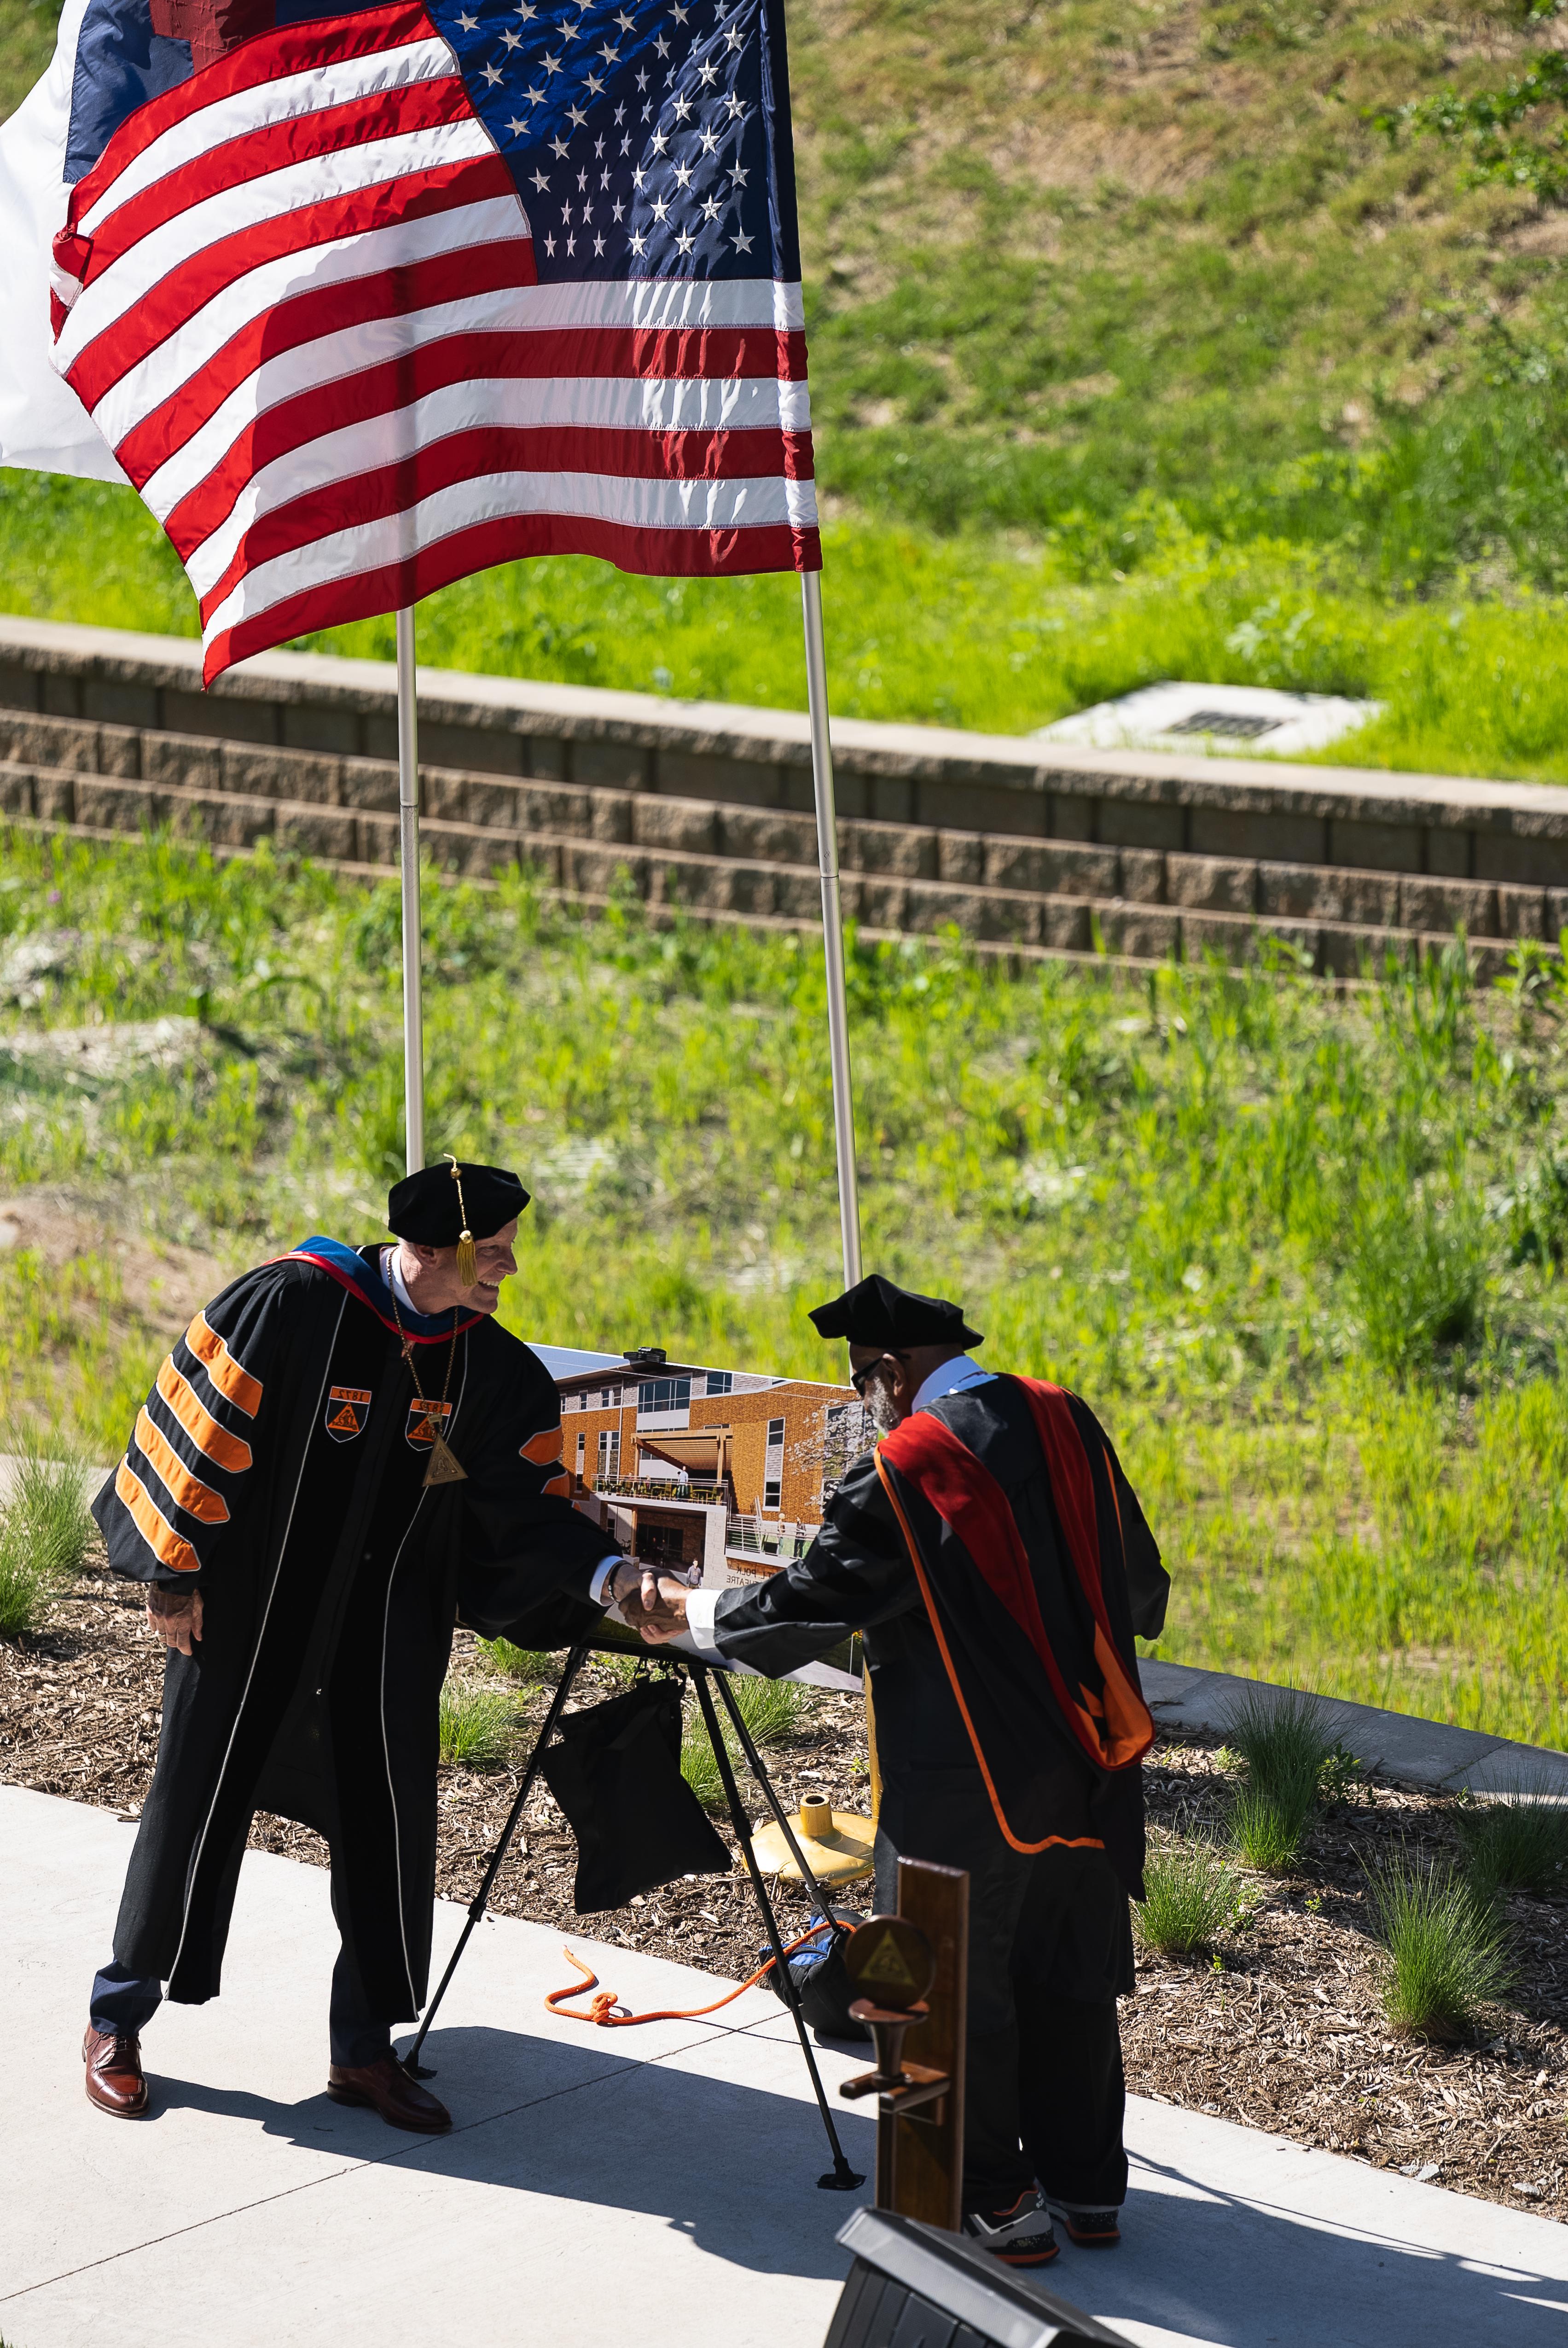 两名身穿黑色学术袍的男子在一幅建筑海报前握手. 他们身后飘扬着一面美国国旗, 绿色植物生长的背景被砖挡土墙隔开.